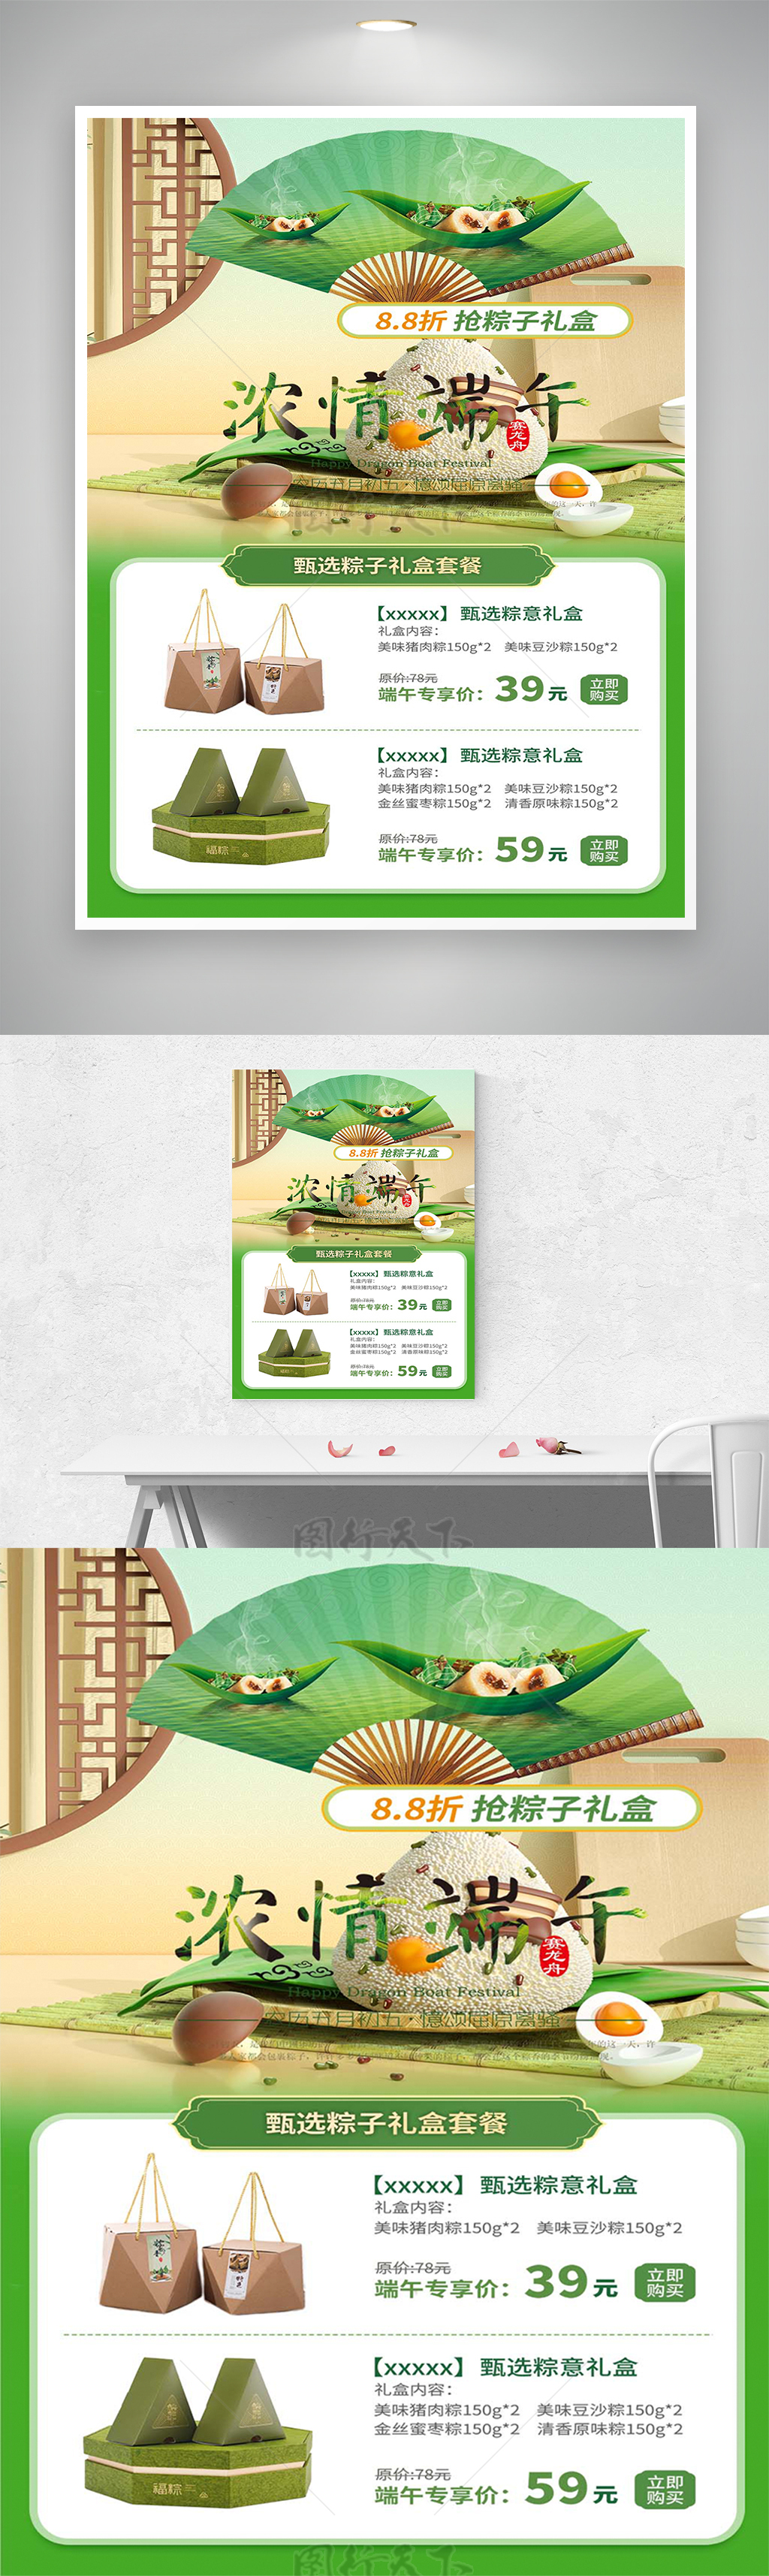 端午节粽子礼盒套餐促销宣传海报